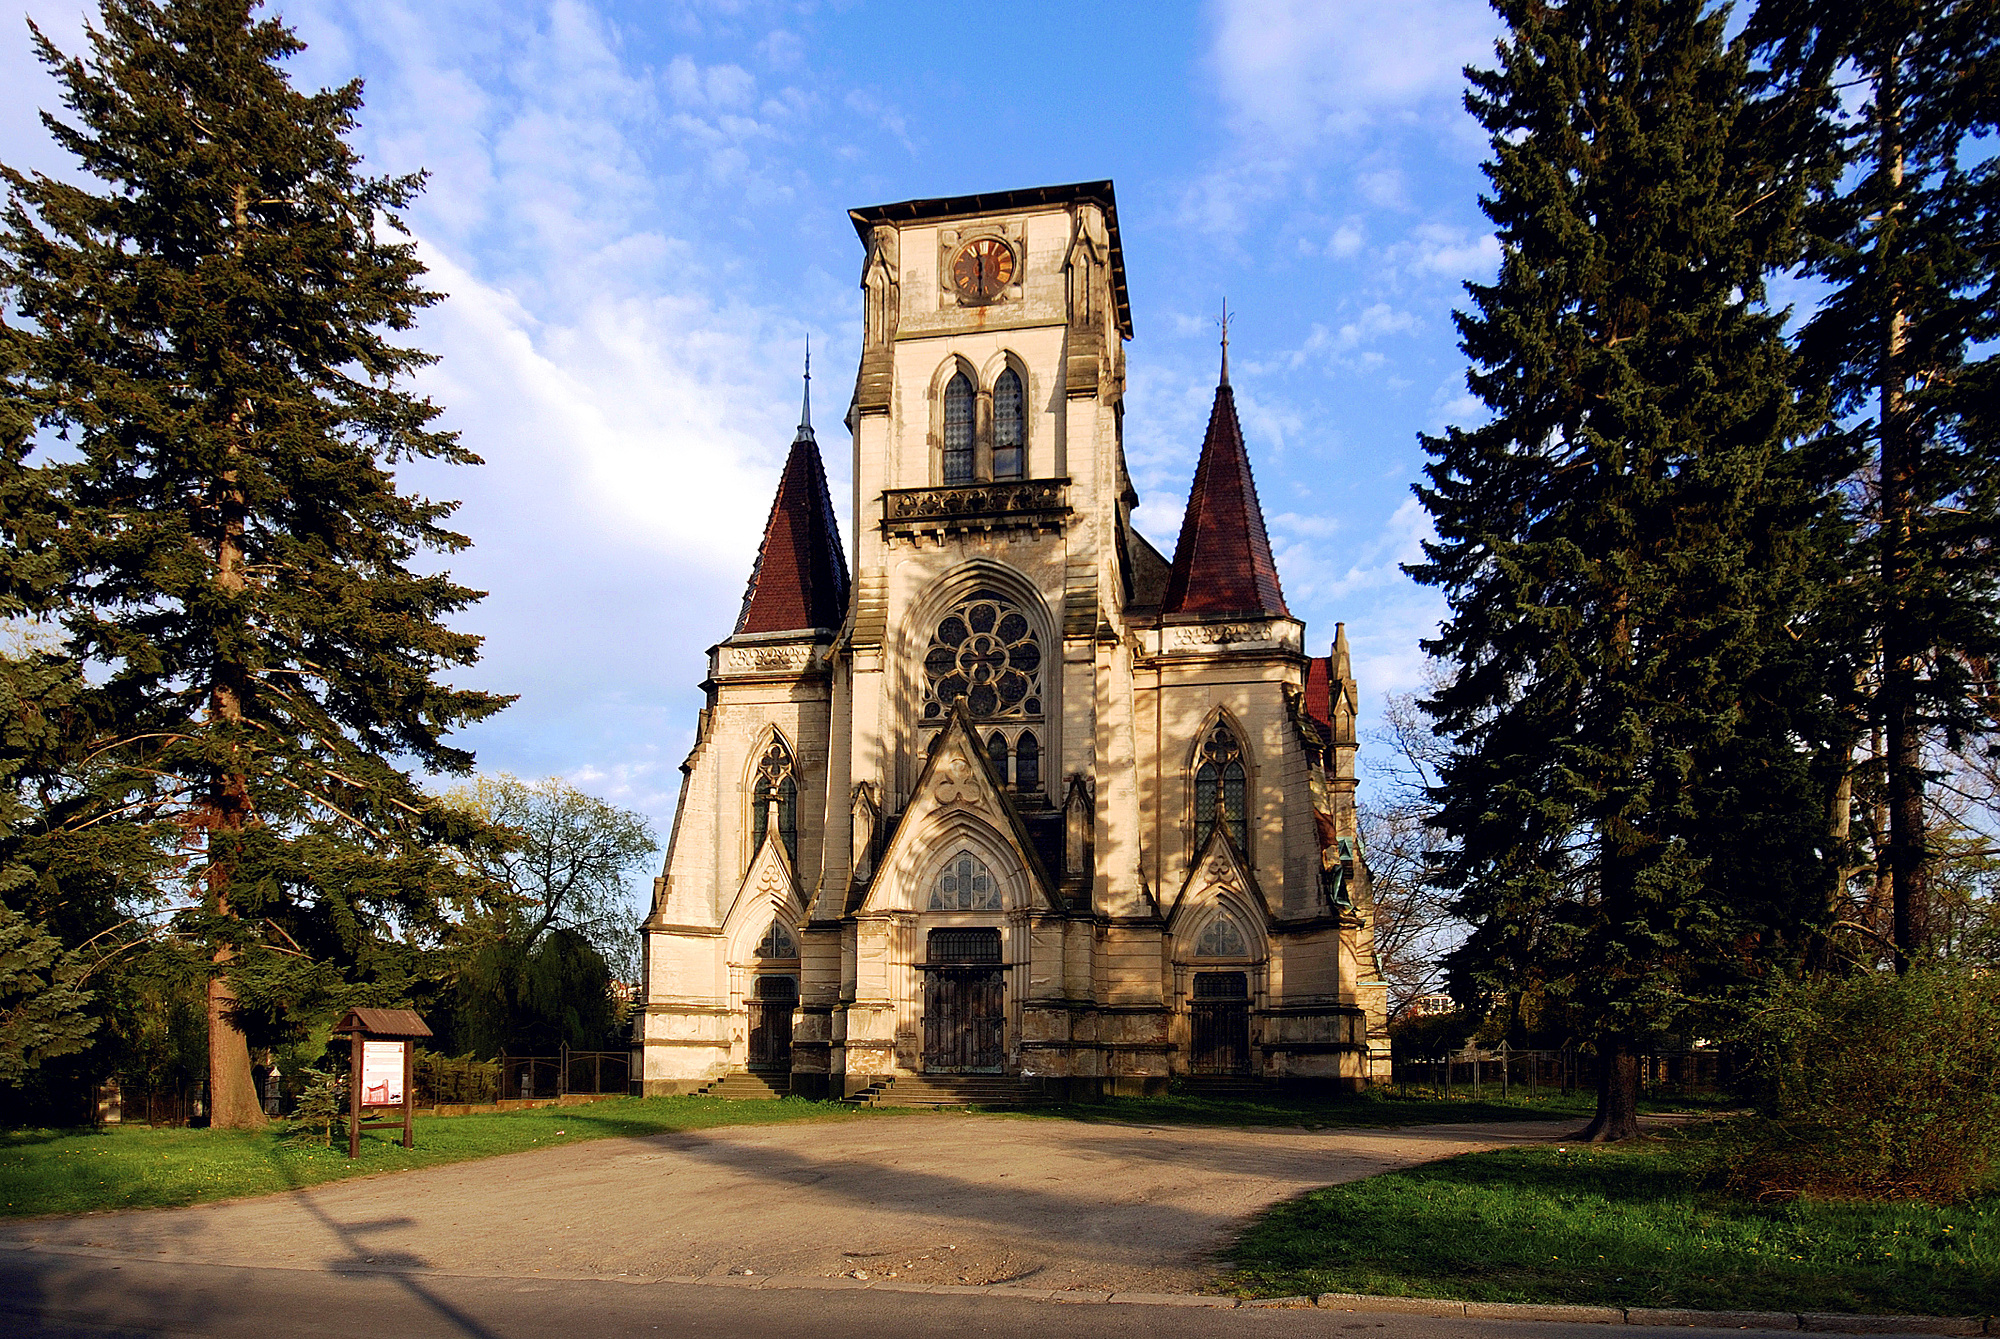 Kostel svatého Karla Boromejského, zvaný kostel bez věže